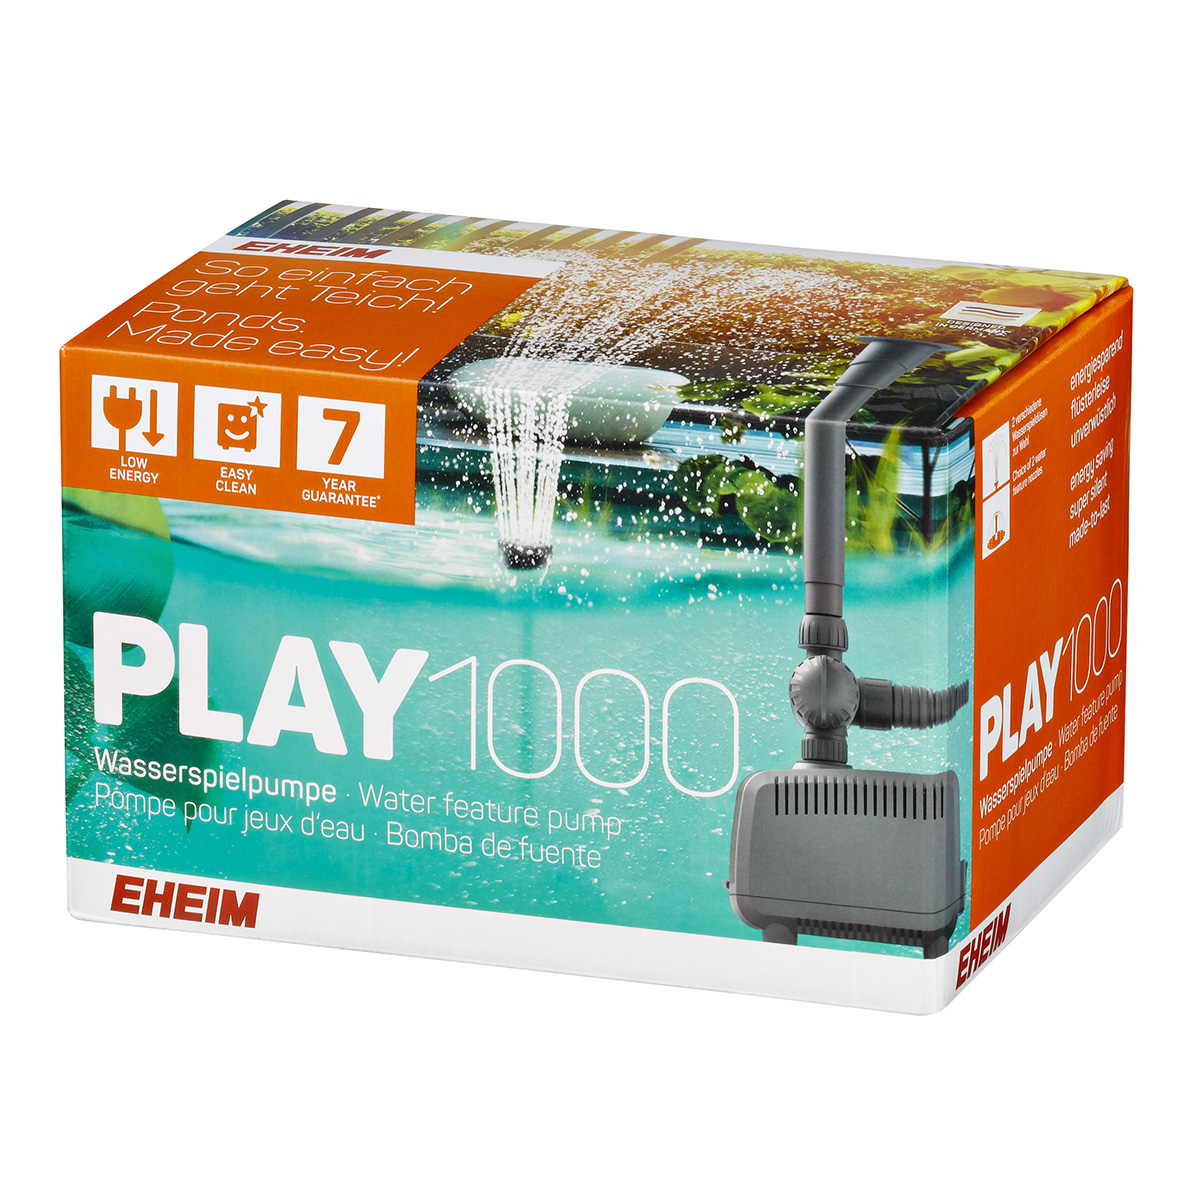 EHEIM čerpadlo pro vodní prvky PLAY 1000